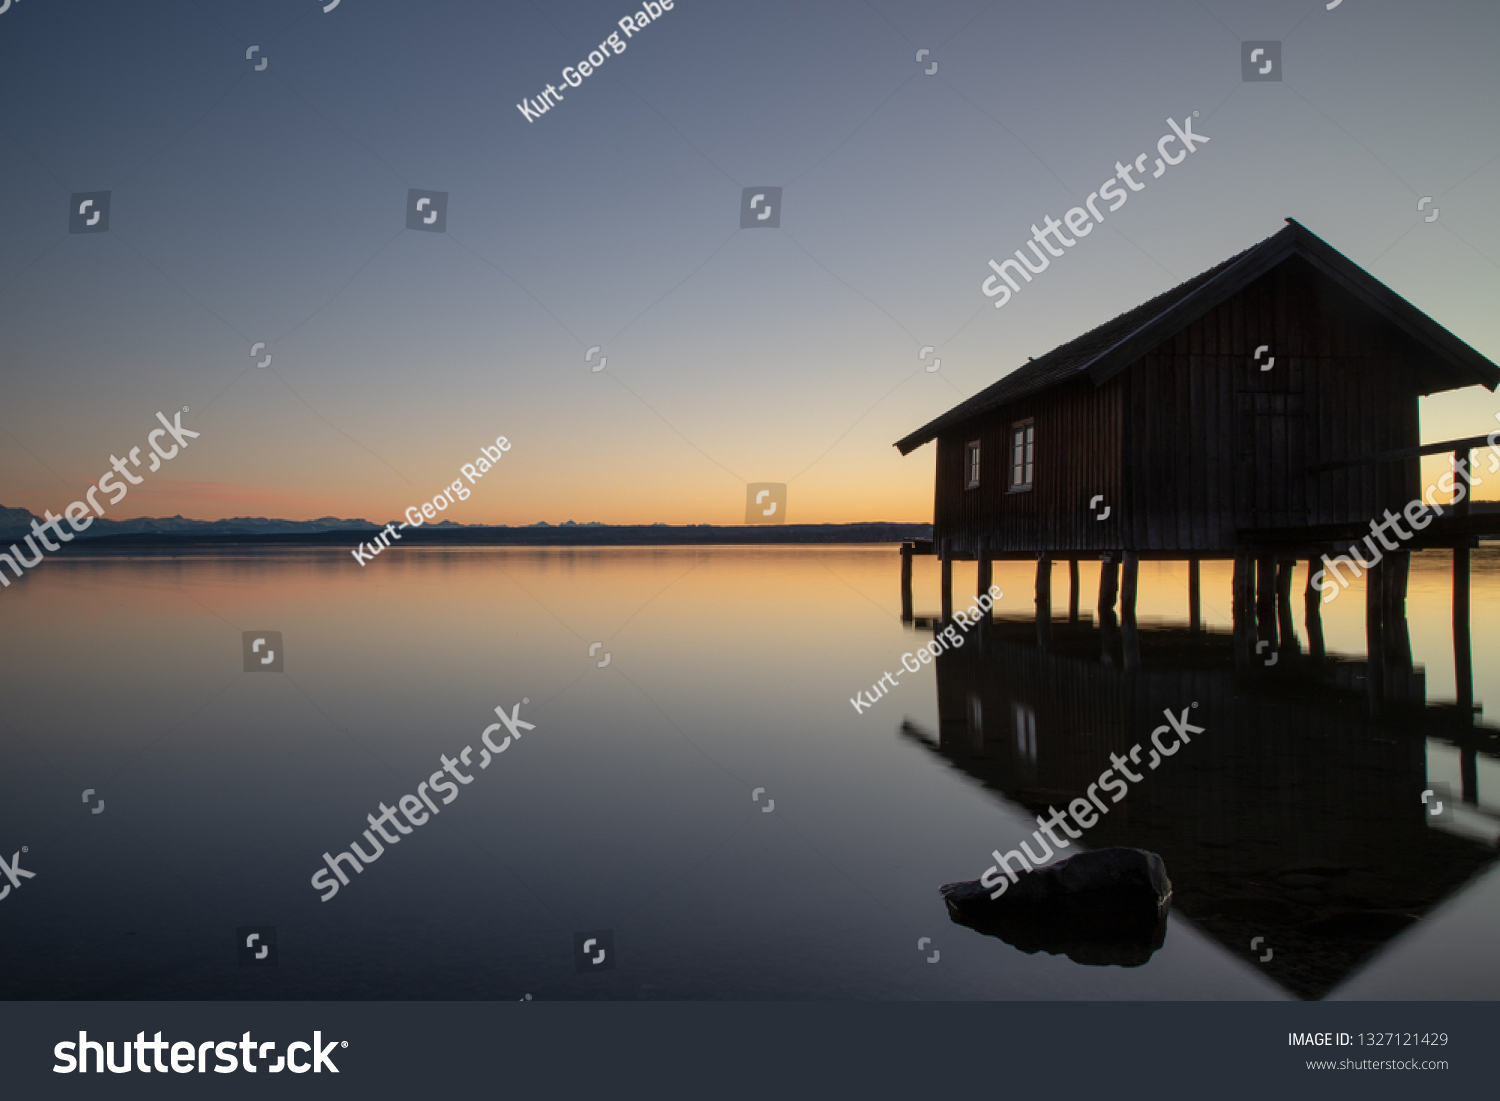 A boatshouse at a lake at sunset #1327121429